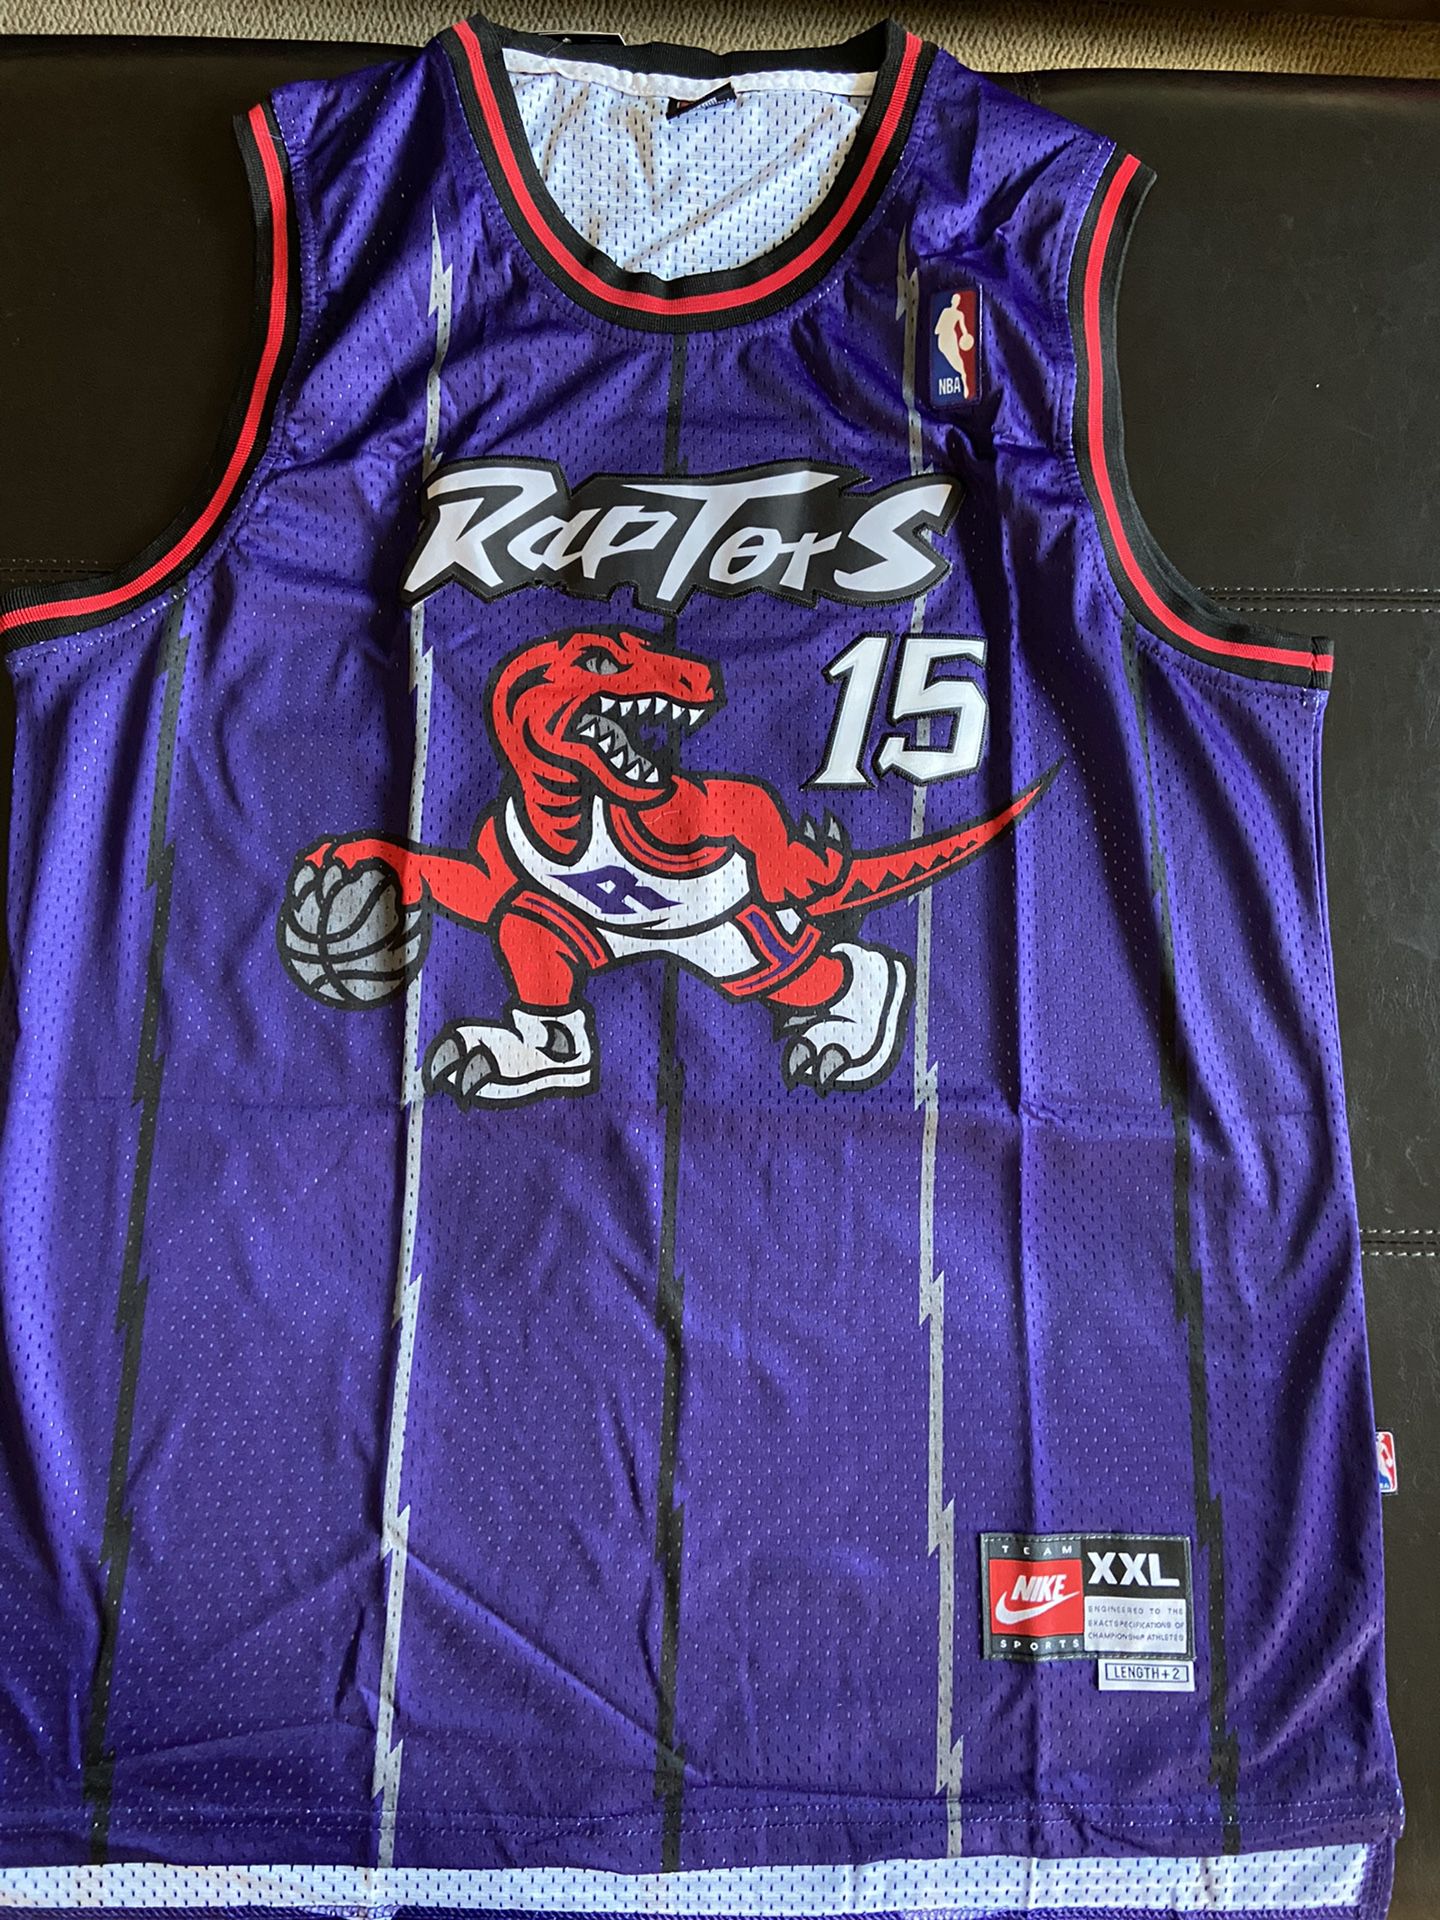 Vince Carter Toronto Raptors Jersey For Sale